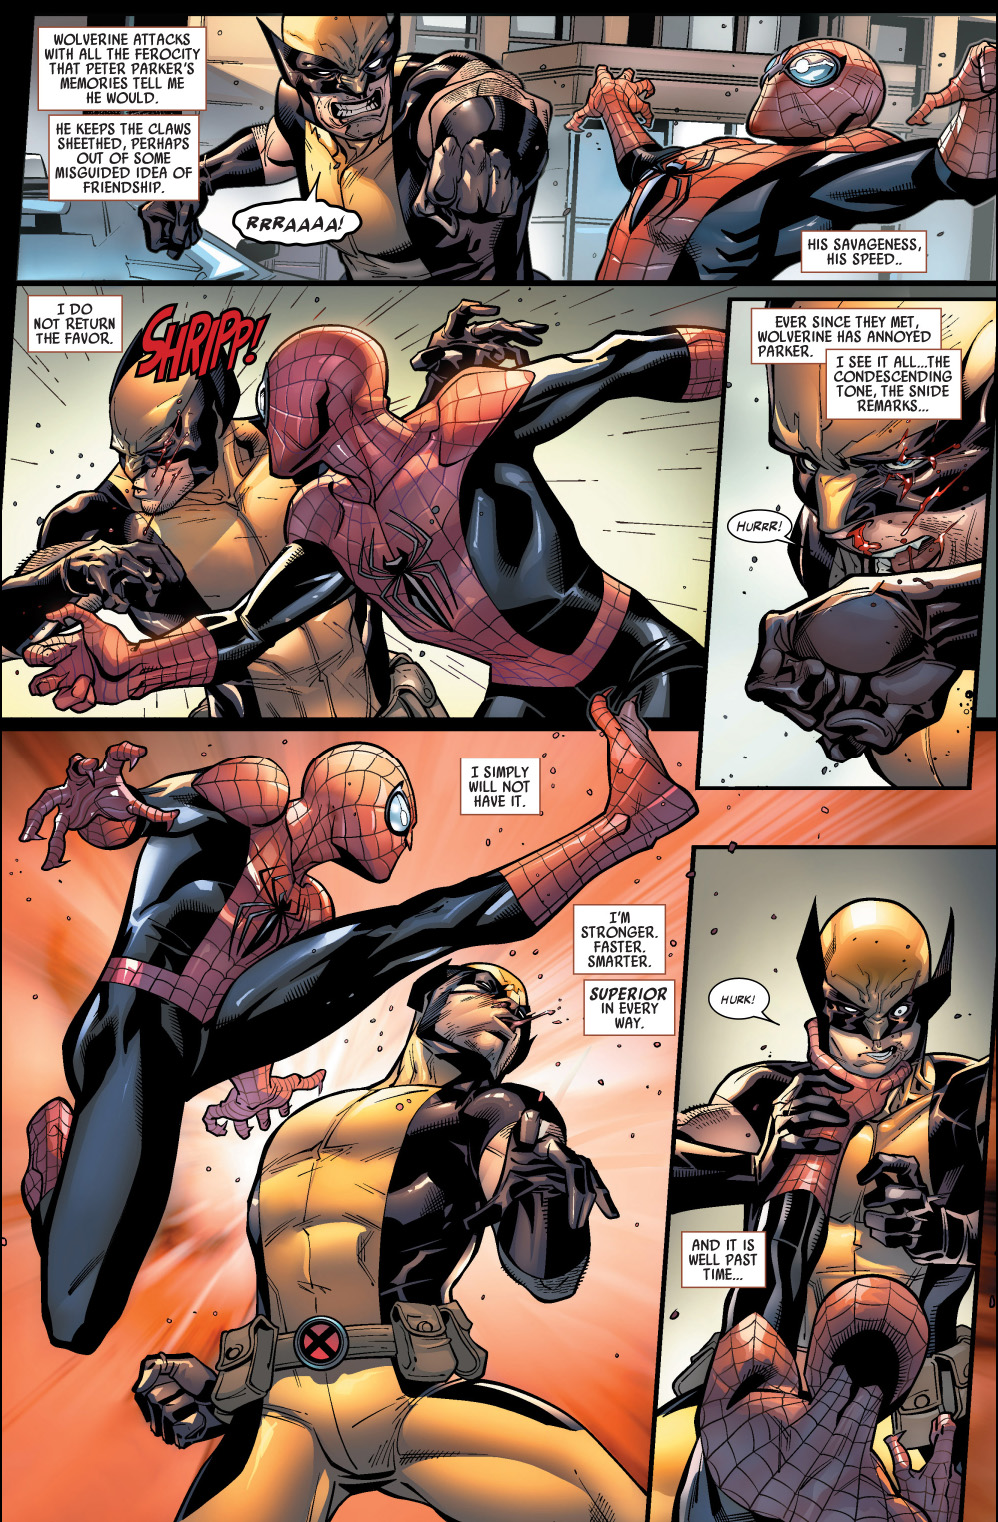 superior spider-man vs wolverine.